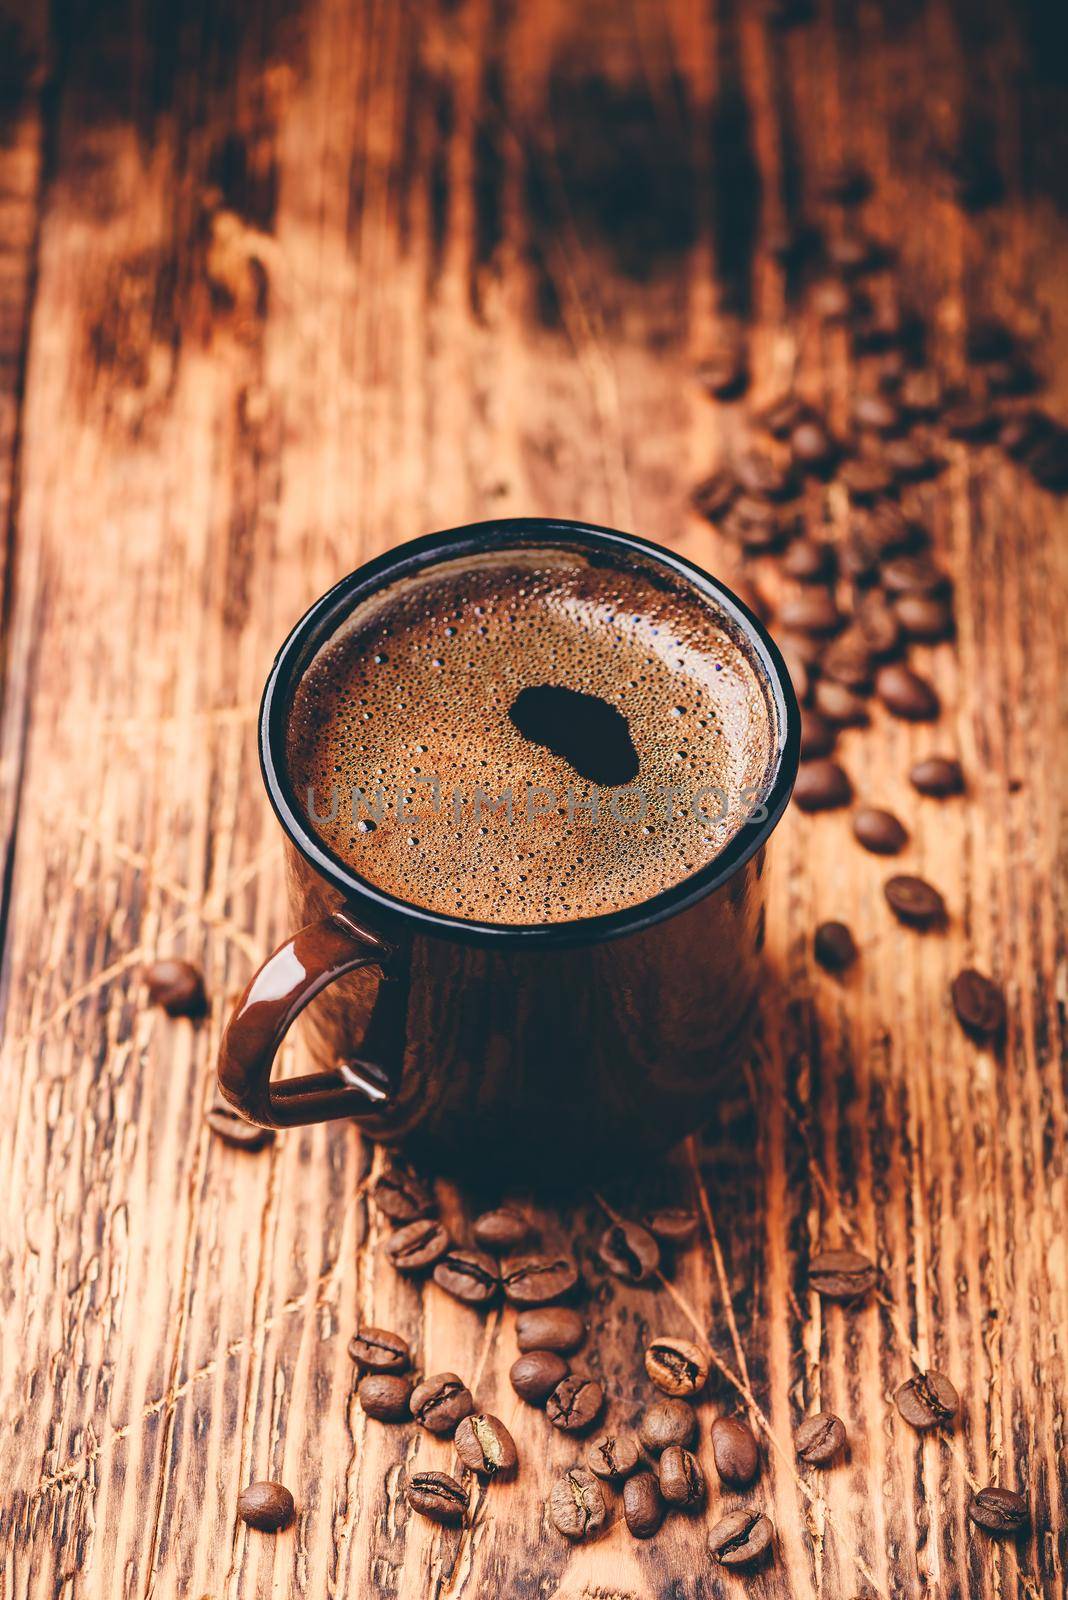 Brewed black coffee in metal mug by Seva_blsv